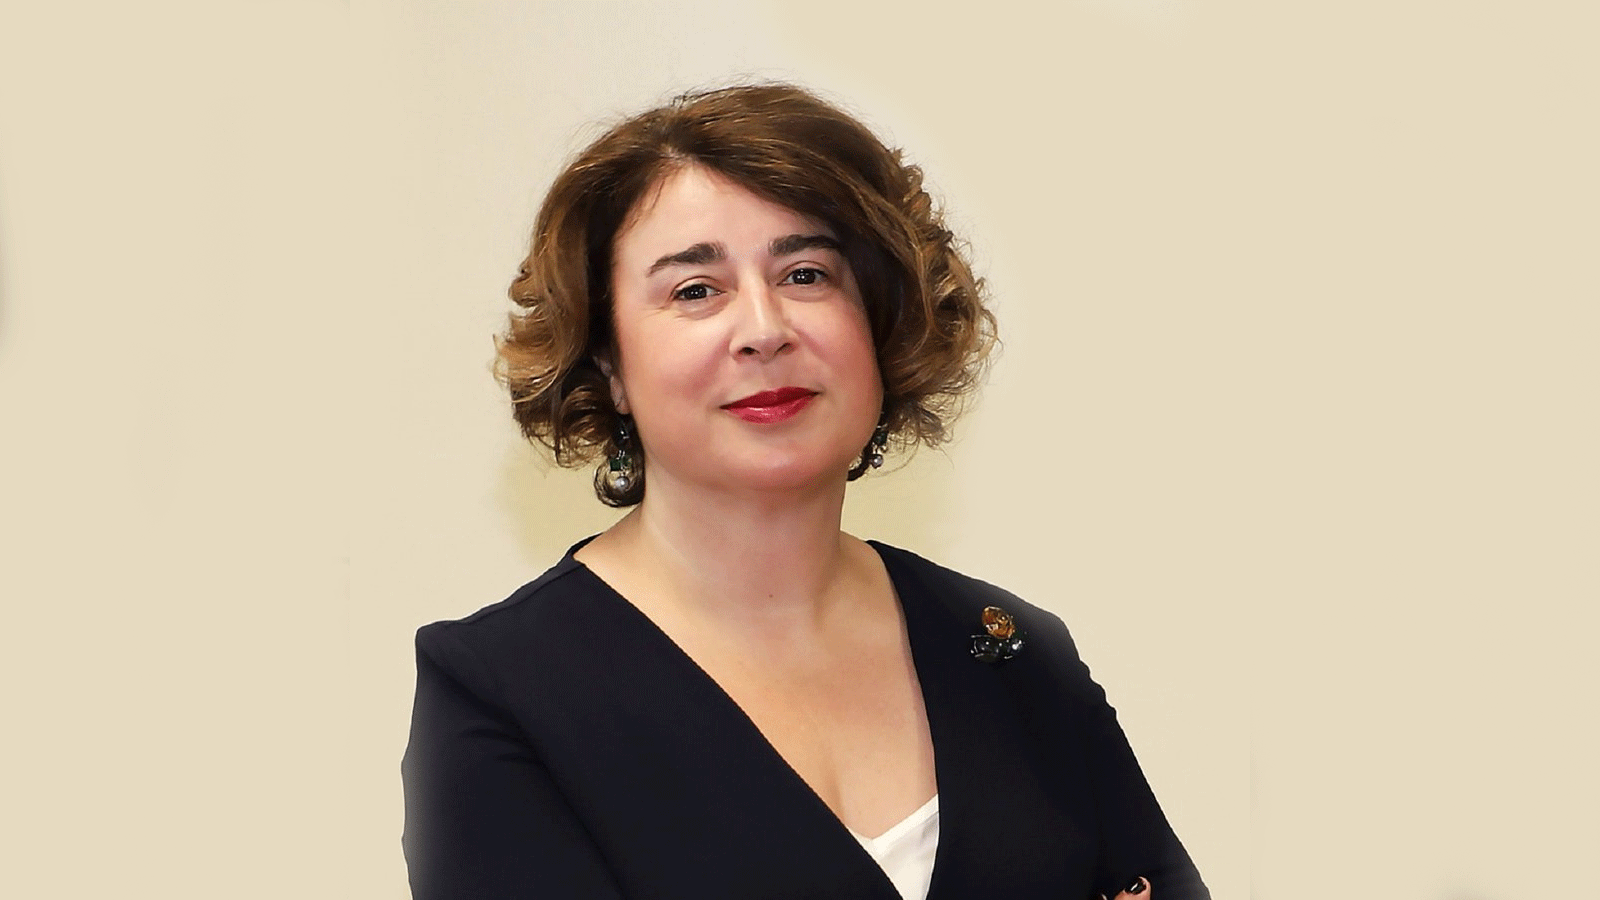  ألكسندرا ريس، وزيرة الدولة للخزانة